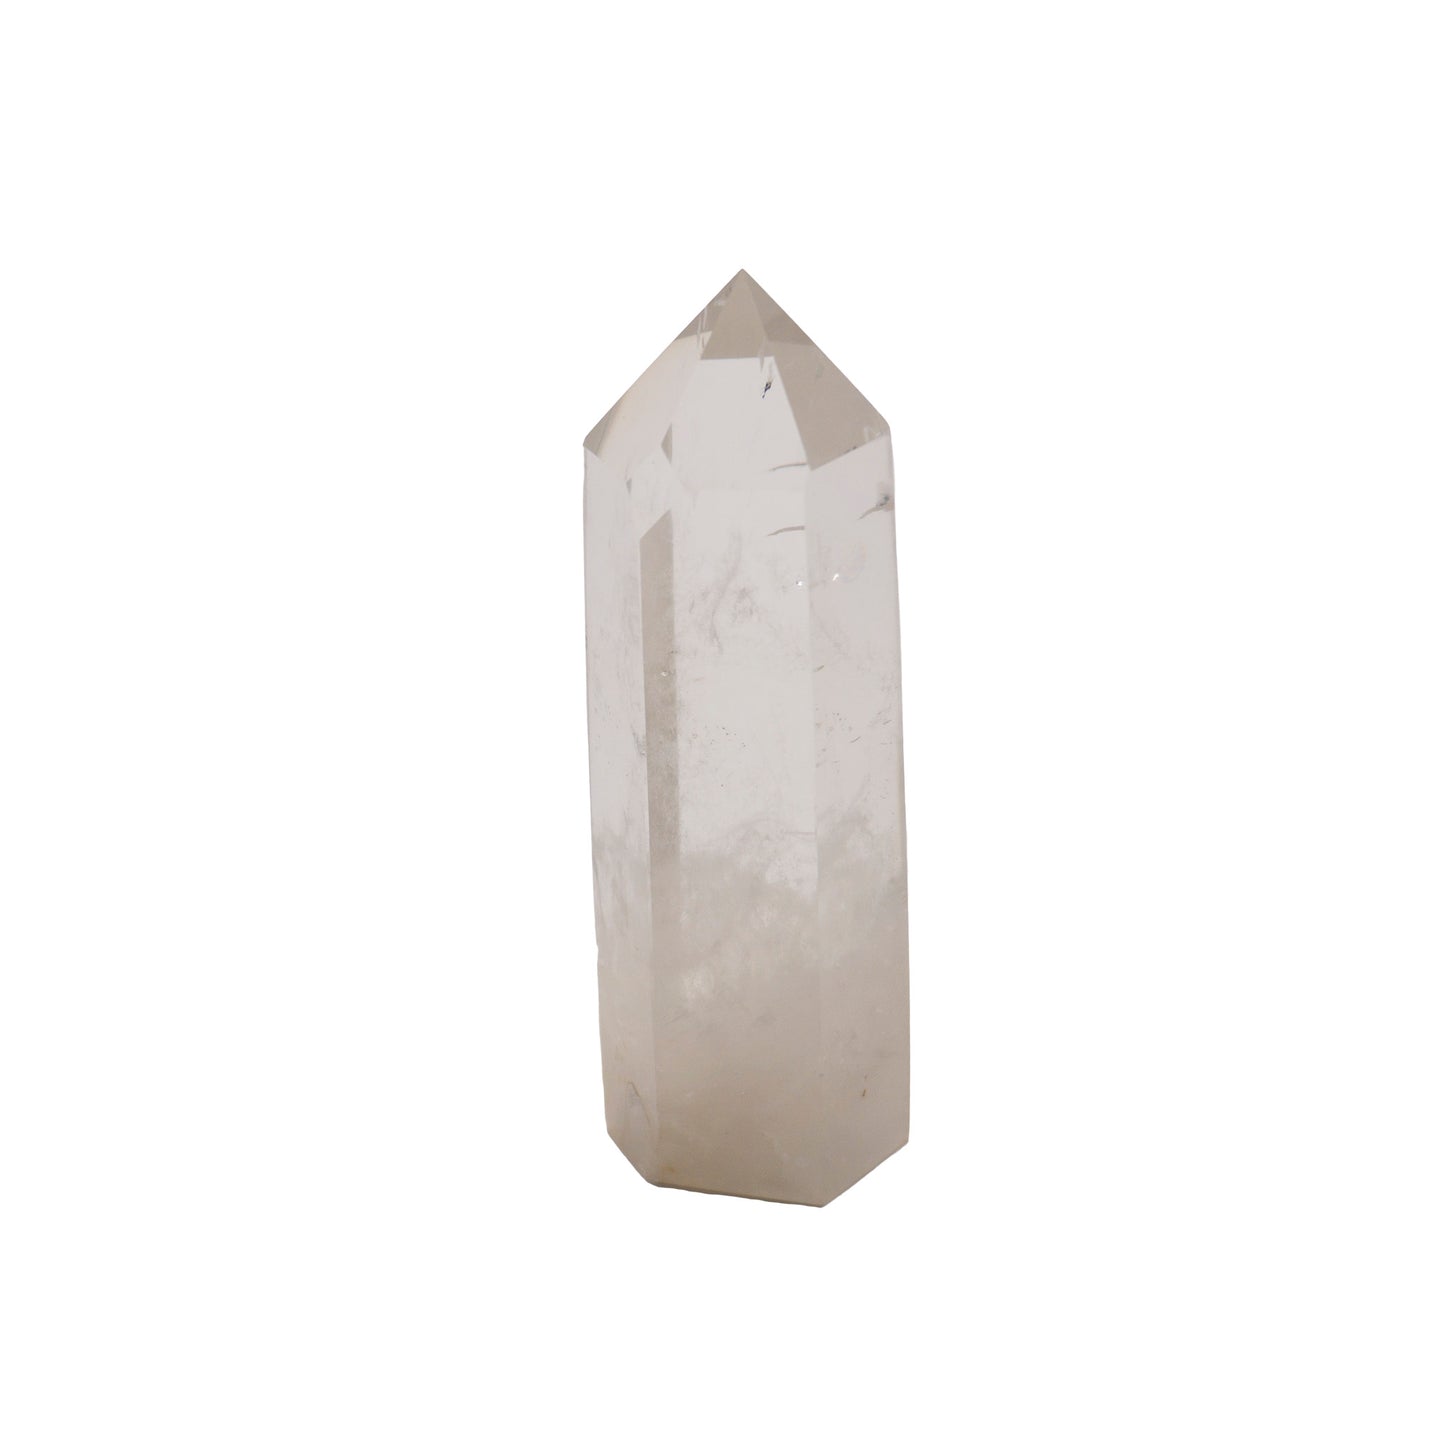 obelisk of clear quartz crystal